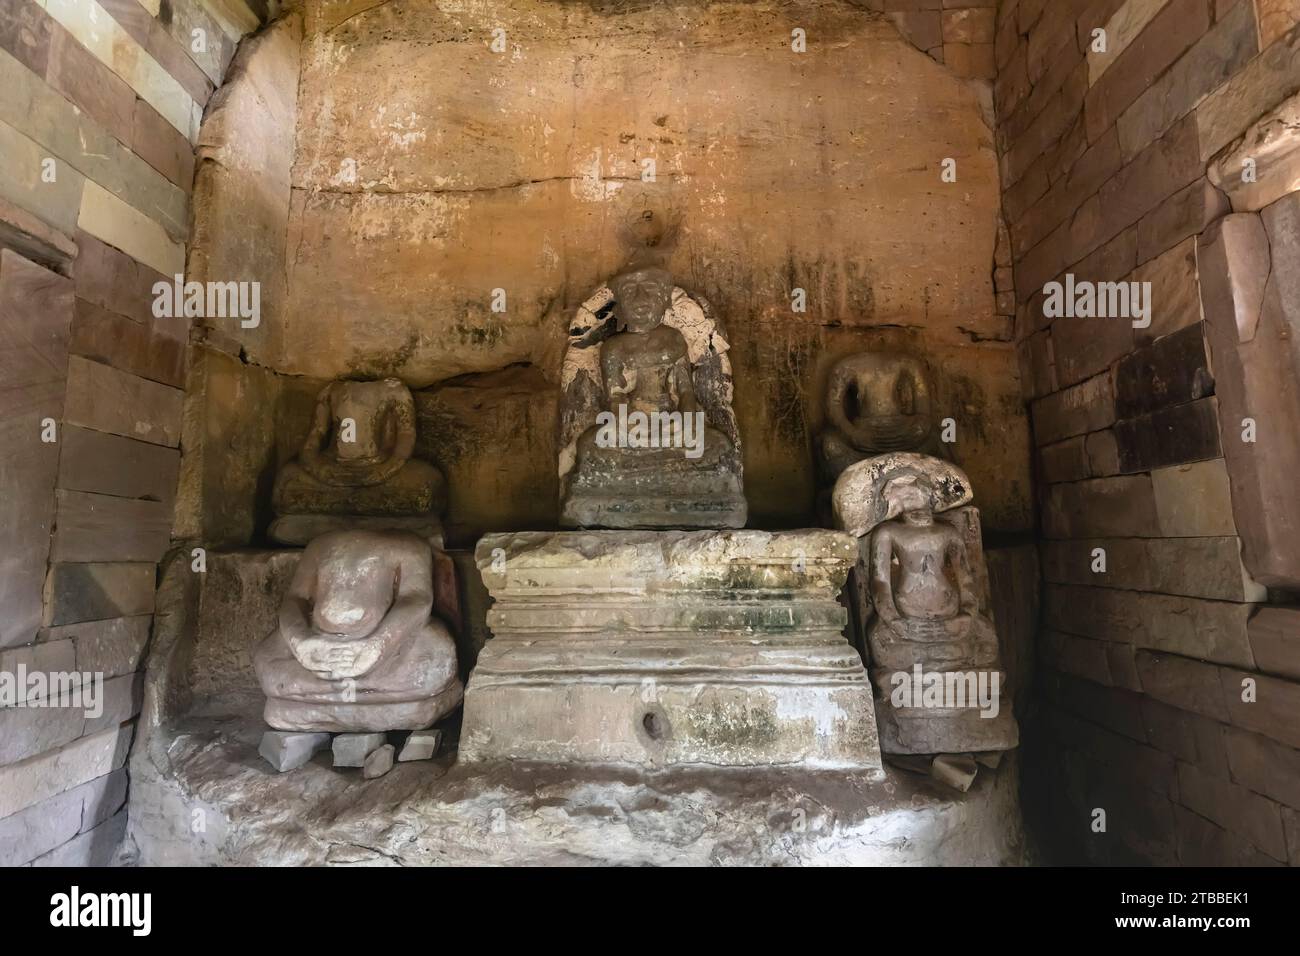 Phu Phra Bat Historical Park, sanctuaire bouddhiste primitif sous abri sous roche, Ban Phue District, Udon Thani, Isan, Thaïlande, Asie du Sud-est, Asie Banque D'Images